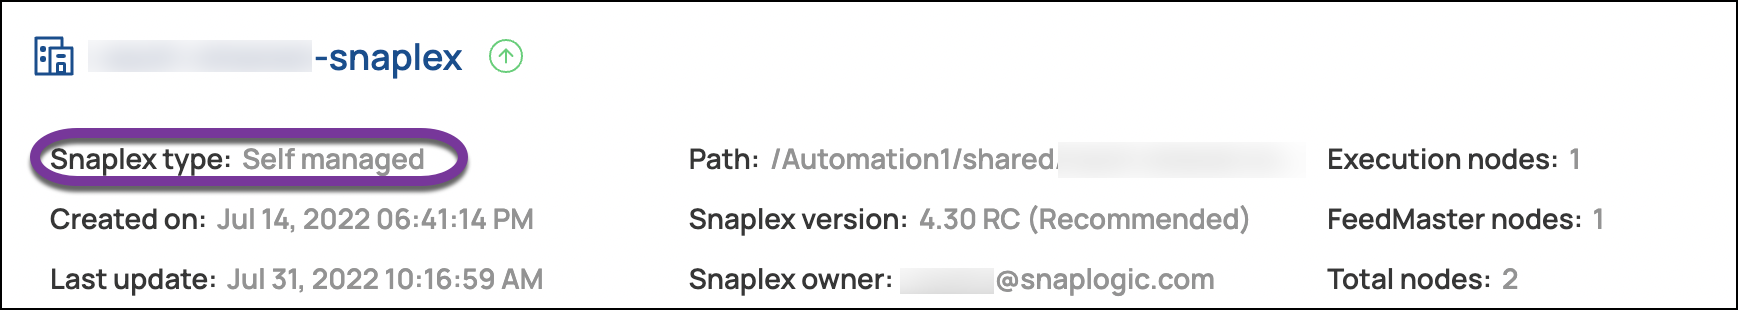 Snaplex Type